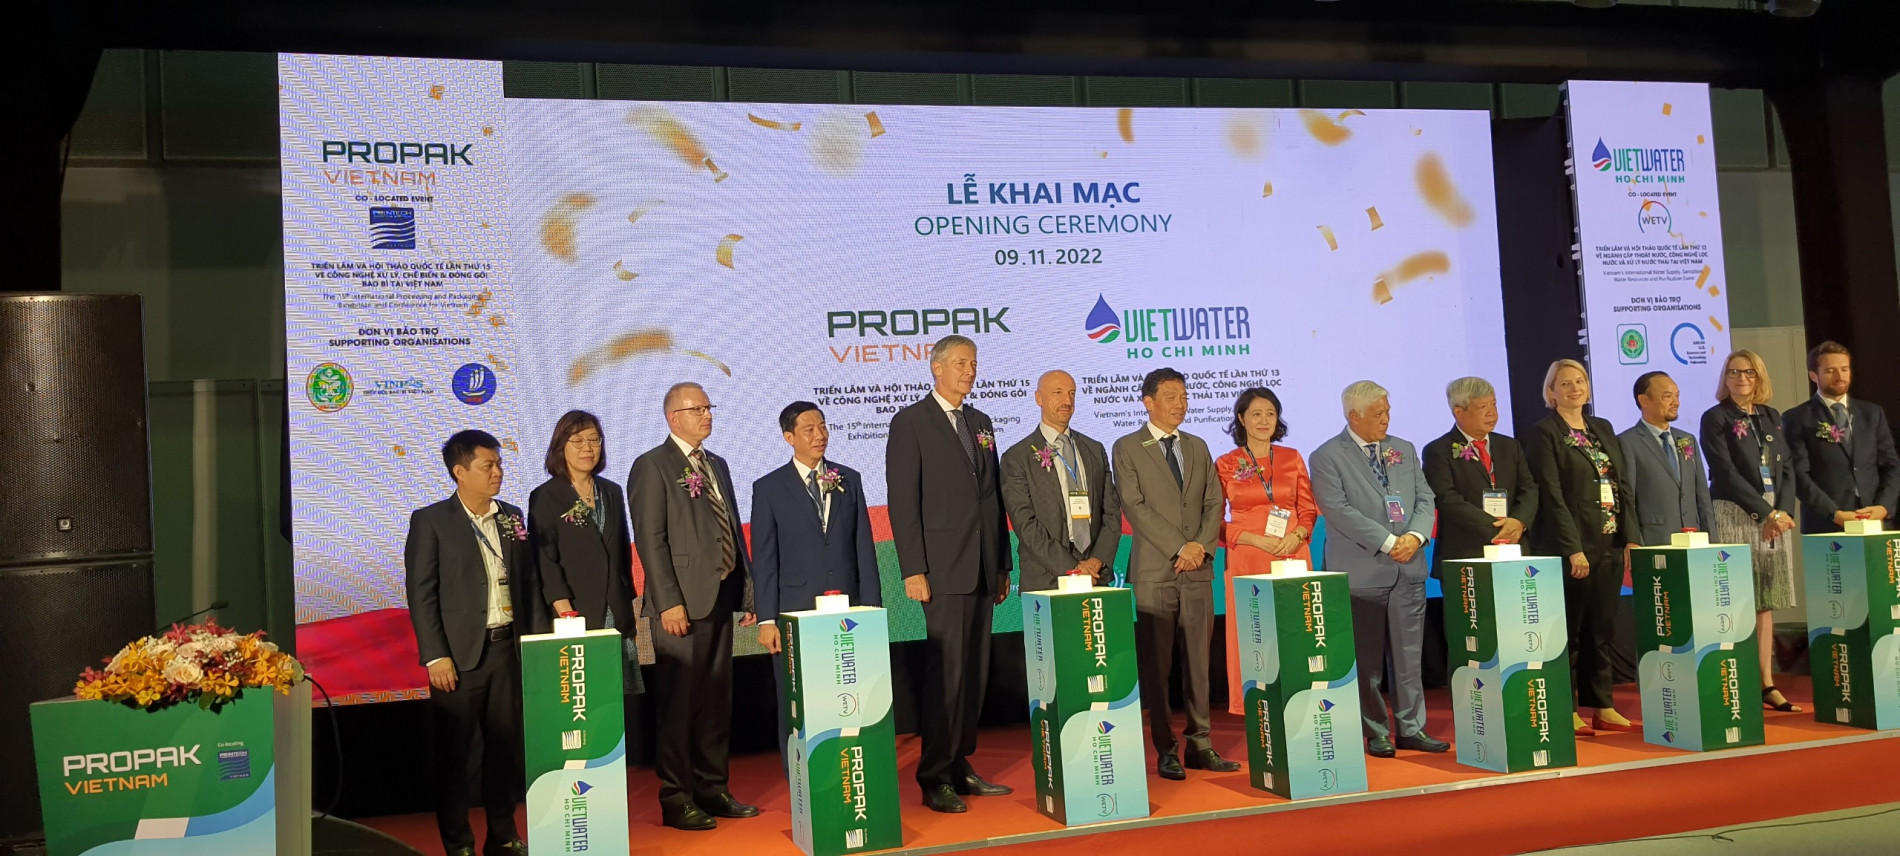 Vietwater và ProPak Vietnam năm 2022: Cơ hội trải nghiệm và tiếp cận thiết bị, công nghệ mới nhất